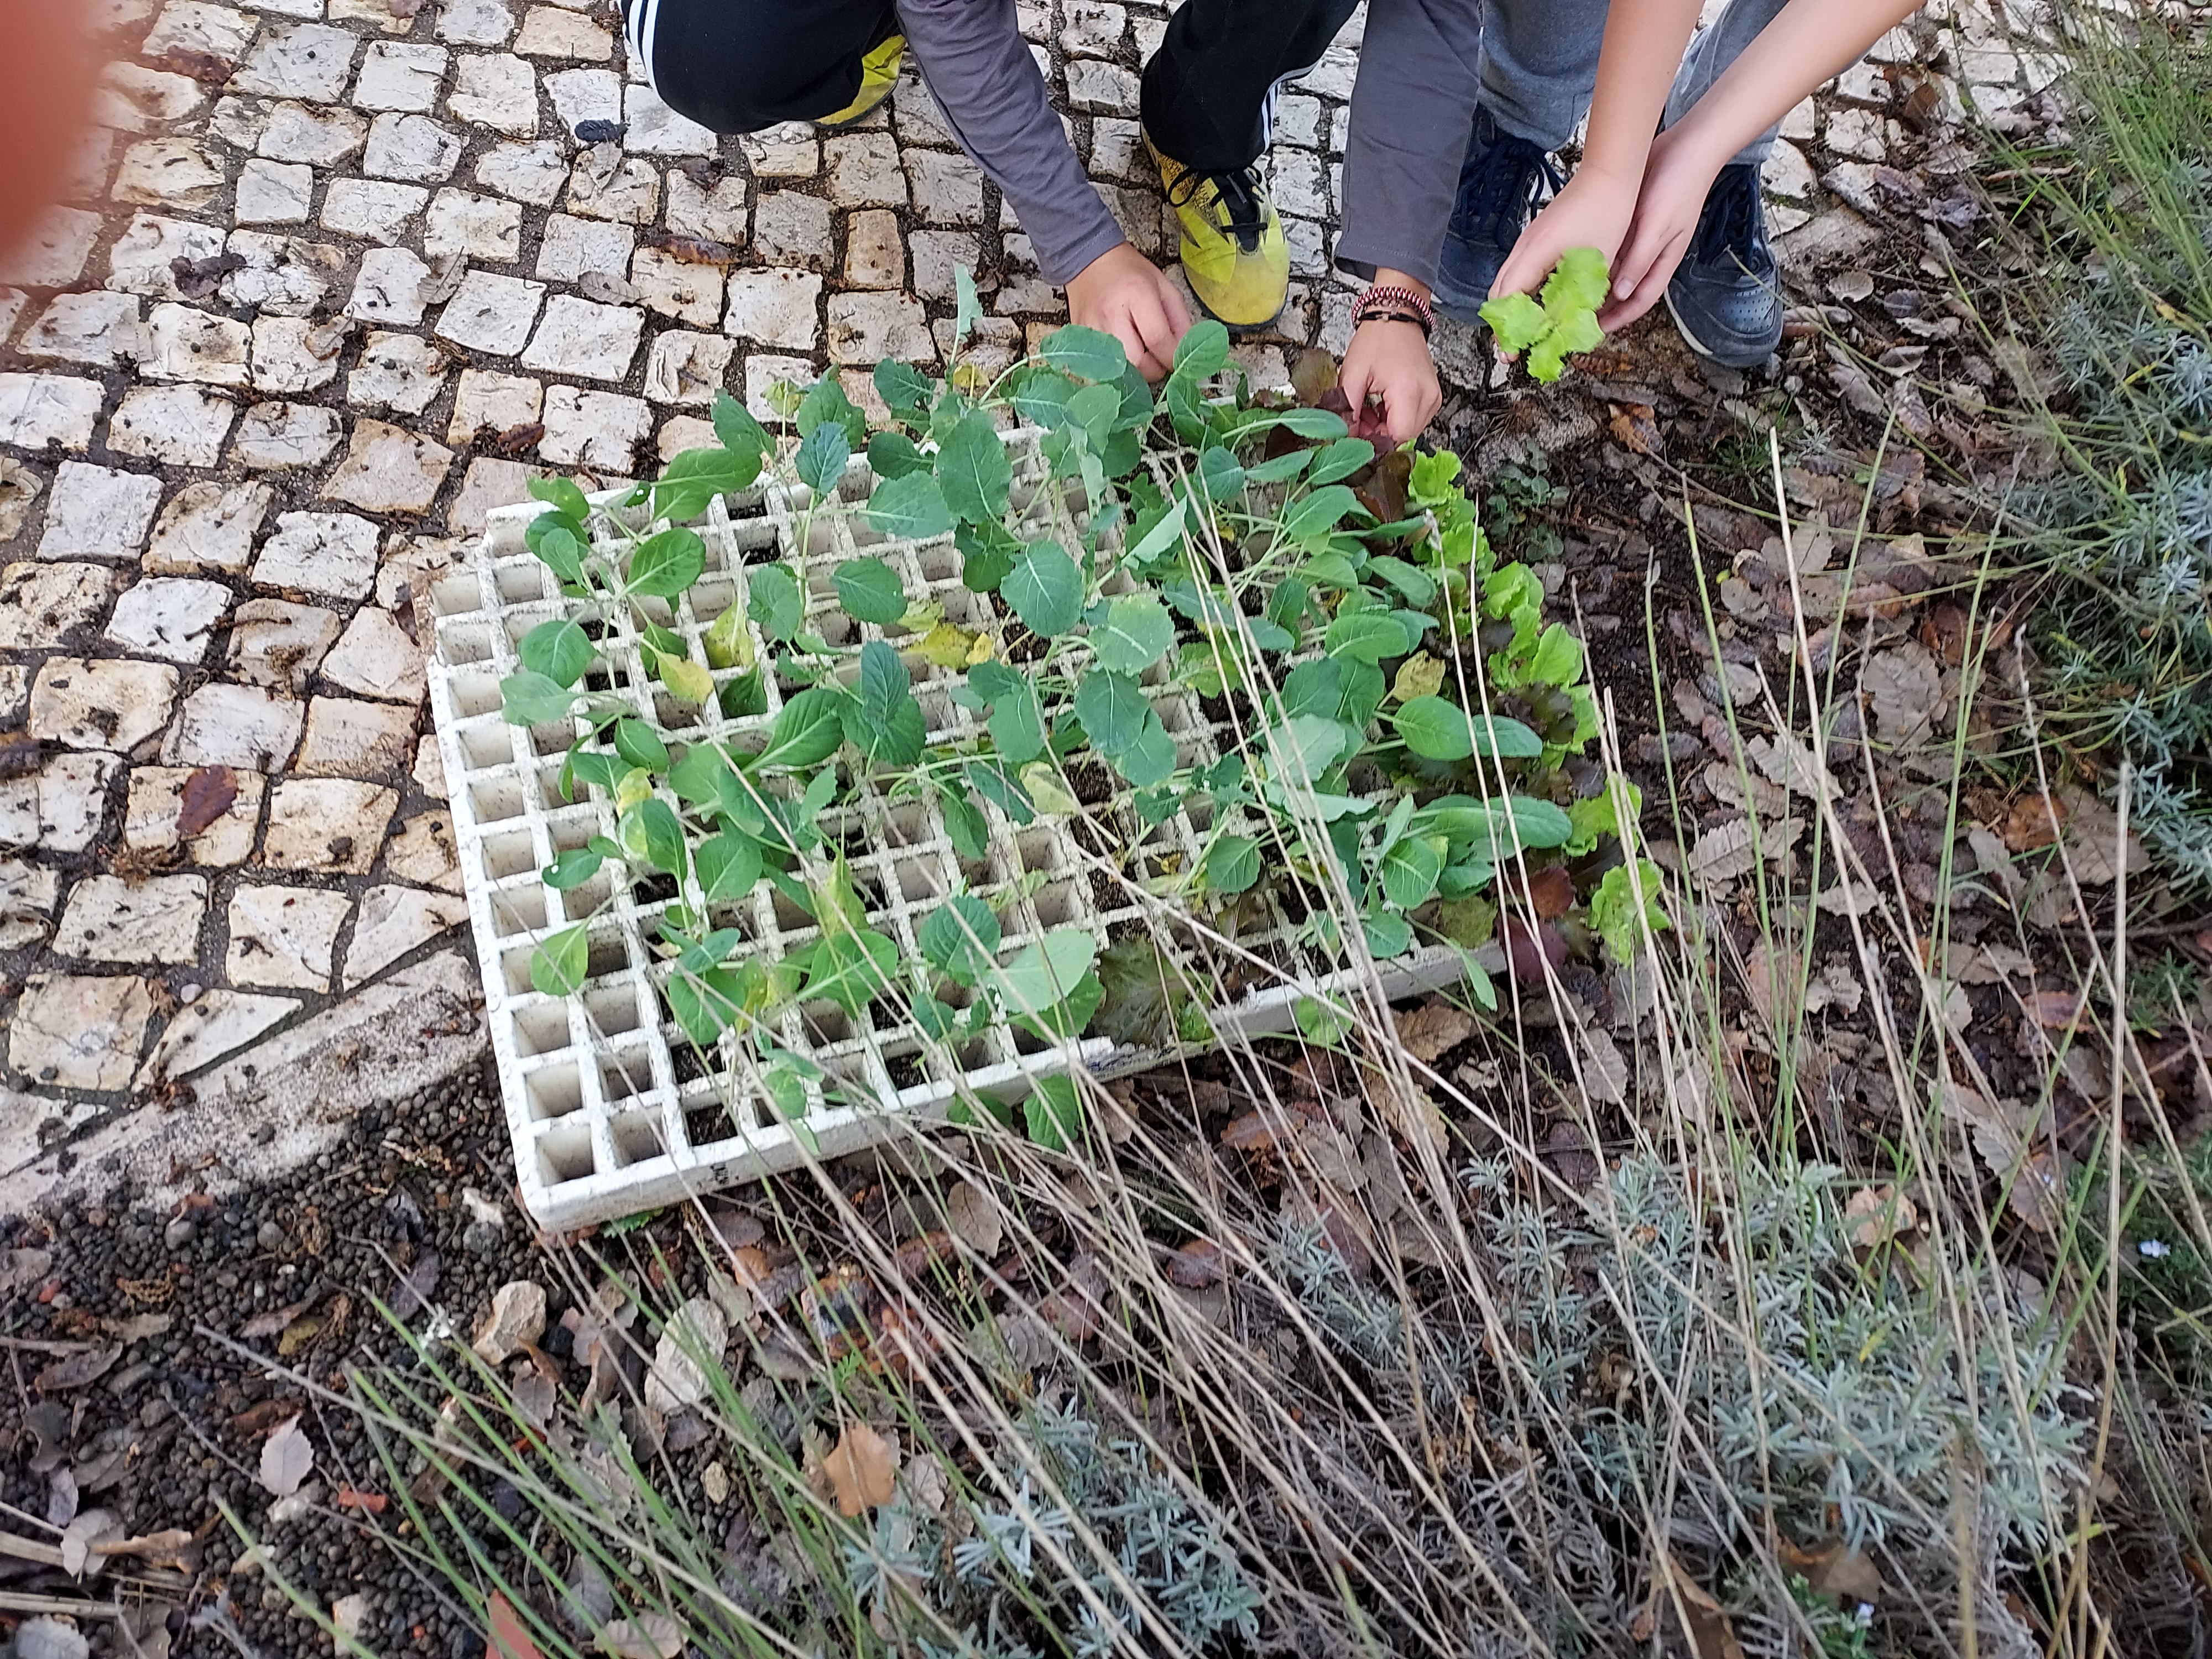 Plântulas
Com a colaboração de uma Encarregada de Educação, os alunos vão plantar couve- lombarda, brócolos, alfaces e semear favas, ervilhas e rabanetes.